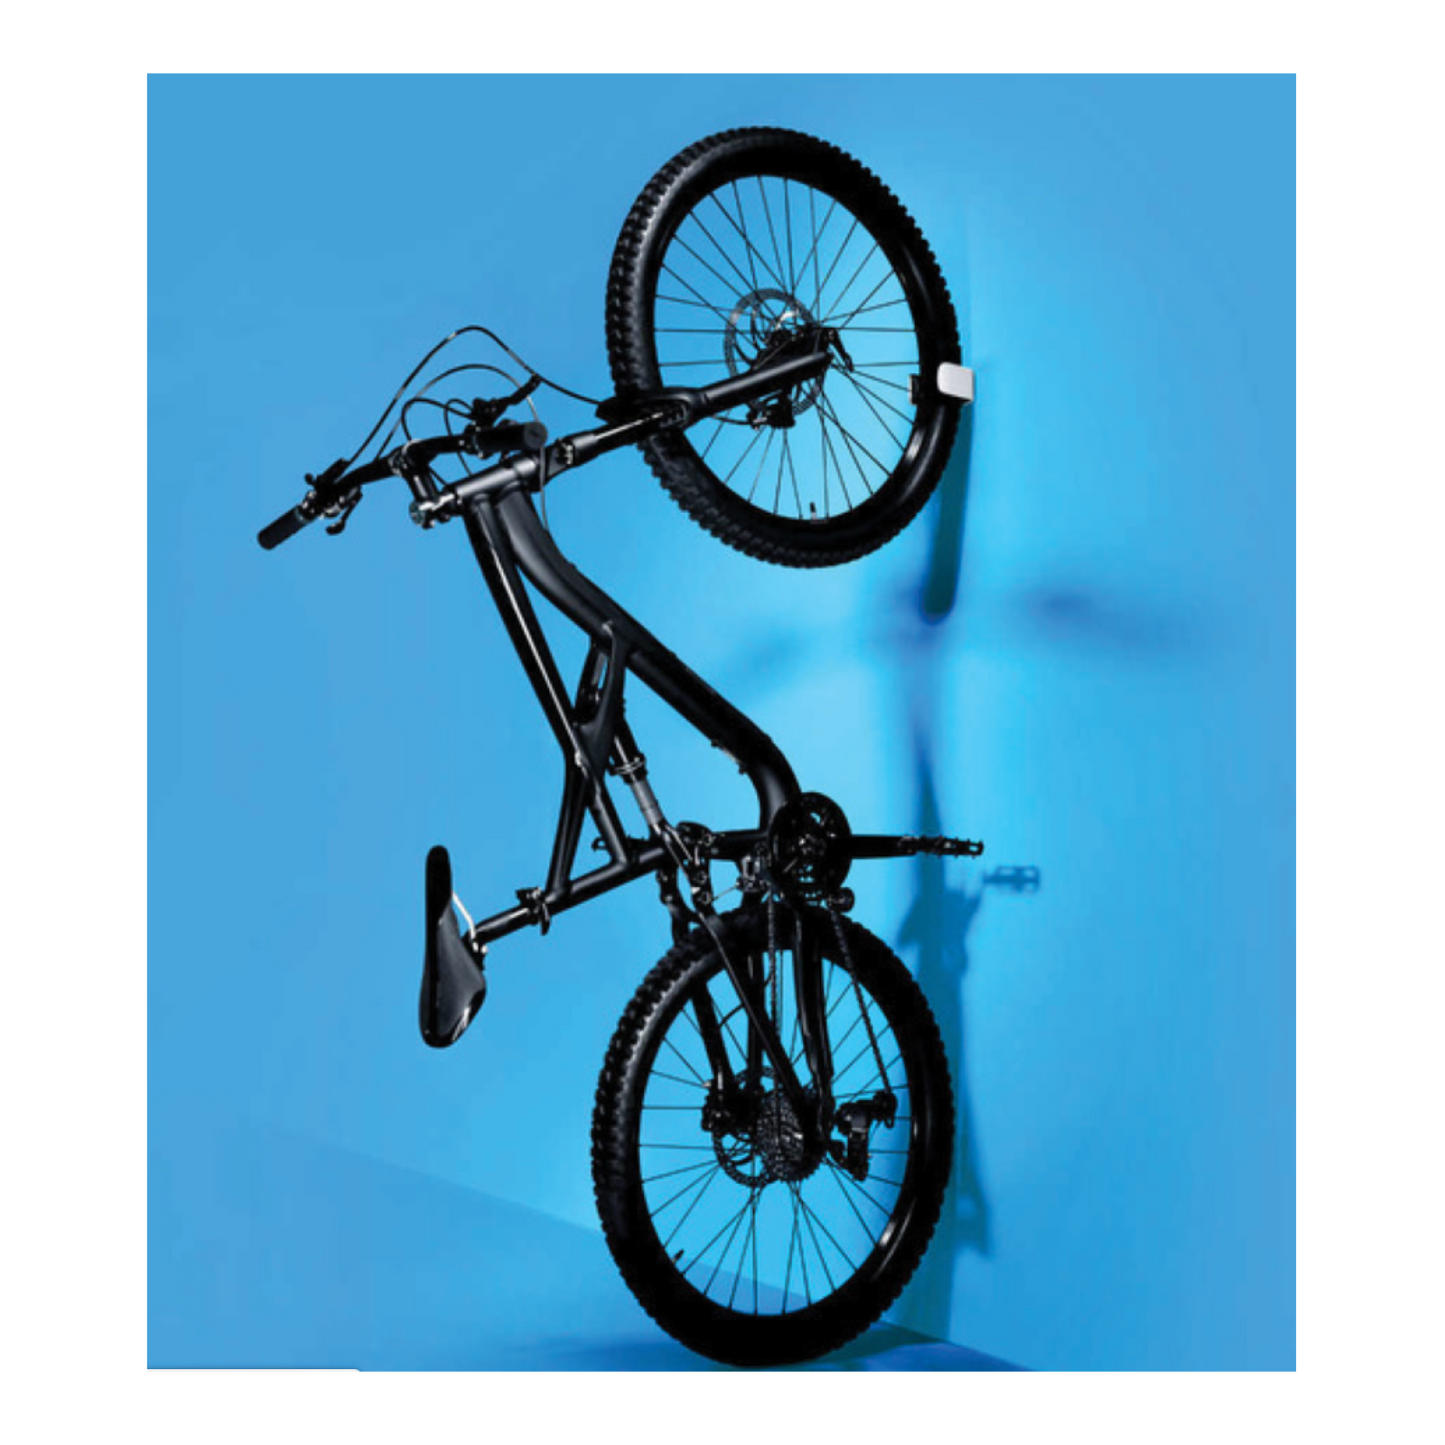 Hornit Clug - The World's Smallest Bike Rack